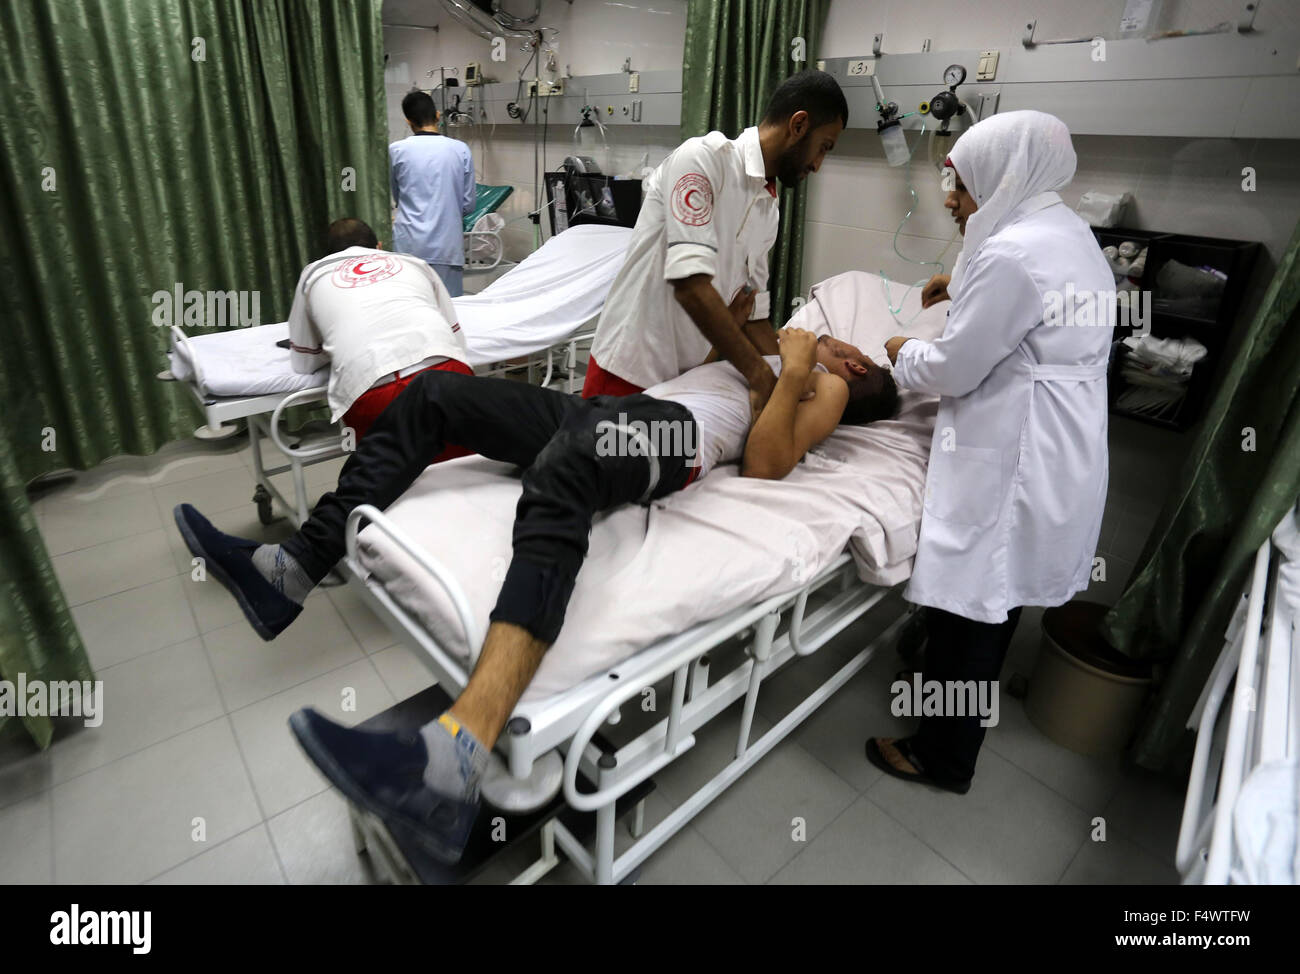 Jabalia, Gazastreifen, Palästinensische Gebiete. 23. Oktober 2015. Ein verletzten palästinensischen Demonstranten, die bei Zusammenstößen mit israelischen Sicherheitskräften verwundet wurde, erhält Behandlung in einem Krankenhaus im nördlichen Gazastreifen am 23. Oktober 2015. Palästinensischen Fraktionen gefordert Massenkundgebungen gegen Israel in den besetzten Westjordanland und Ostjerusalem in einen '' Tag des Zorns '' am Freitag, als Welt und regionale Mächte angedrückt mit Vorträgen zu versuchen, mehr als drei Wochen des Blutvergießens Credit Ende: Mohammed Asad/APA Bilder/ZUMA Draht/Alamy Live News Stockfoto